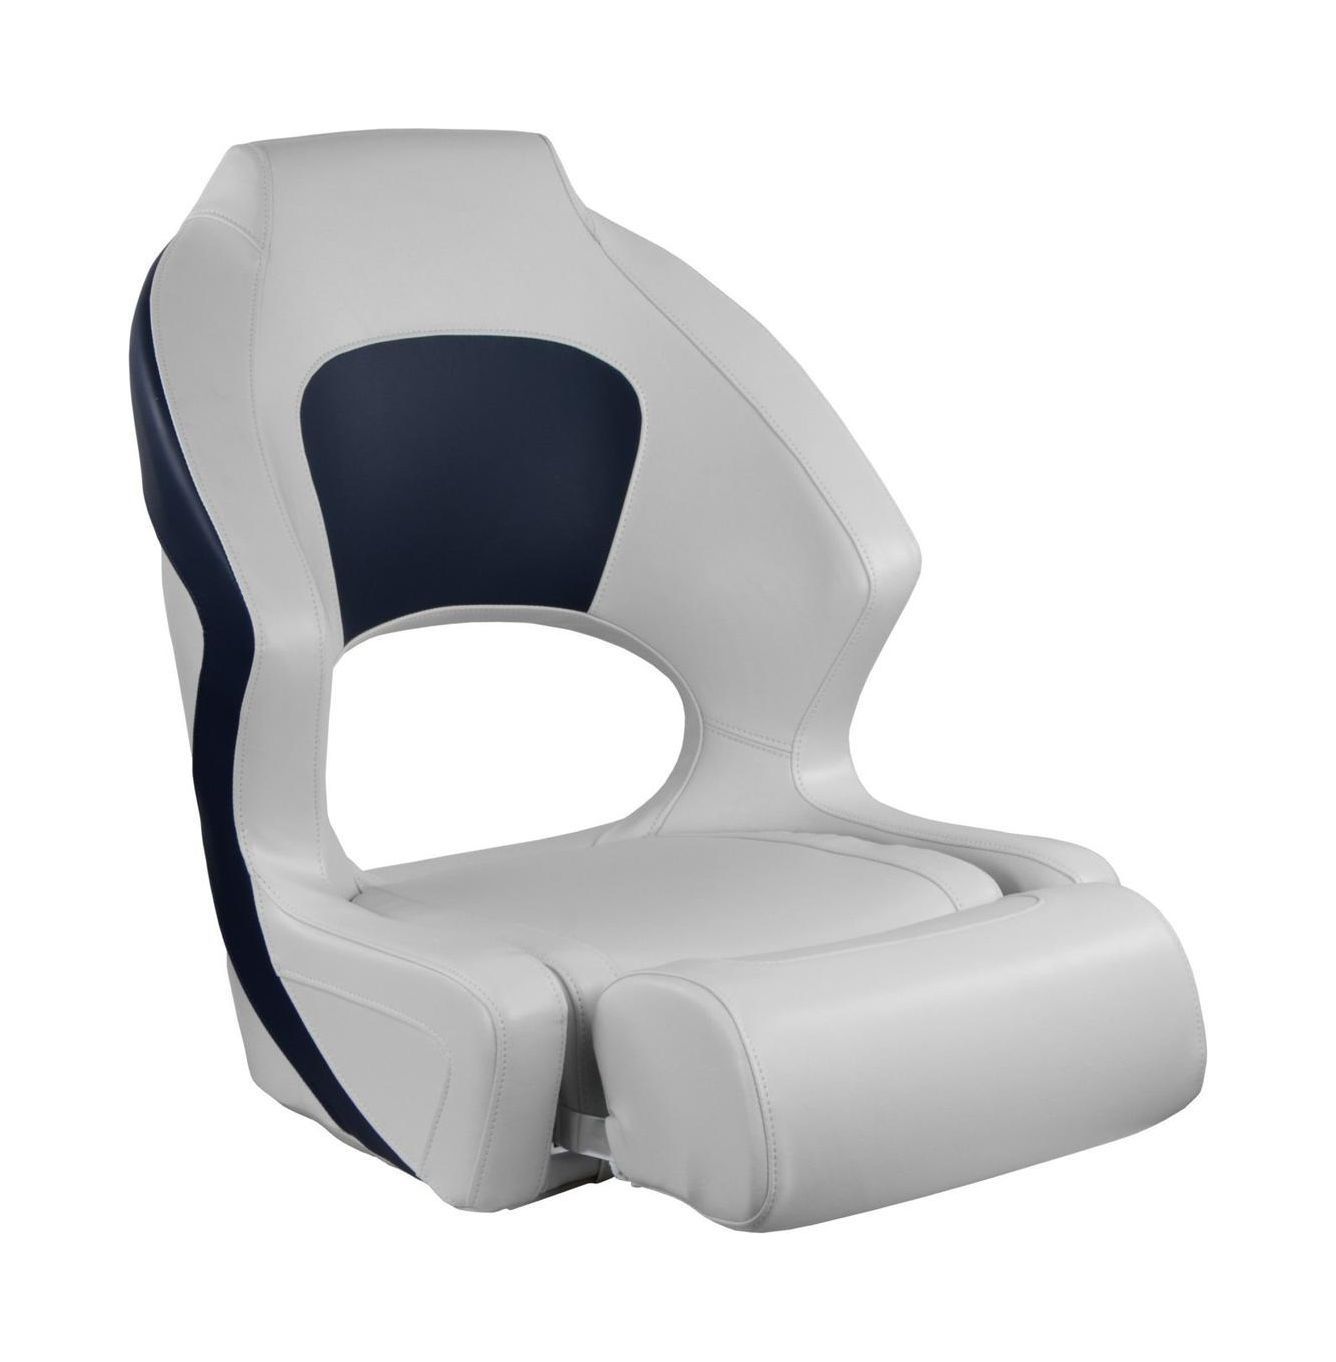 Кресло мягкое Deluxe Sport, с откидным валиком, белый/синий 1043251 кресло ocean 51 мягкое подставка обивка белый синий винил 1070200010